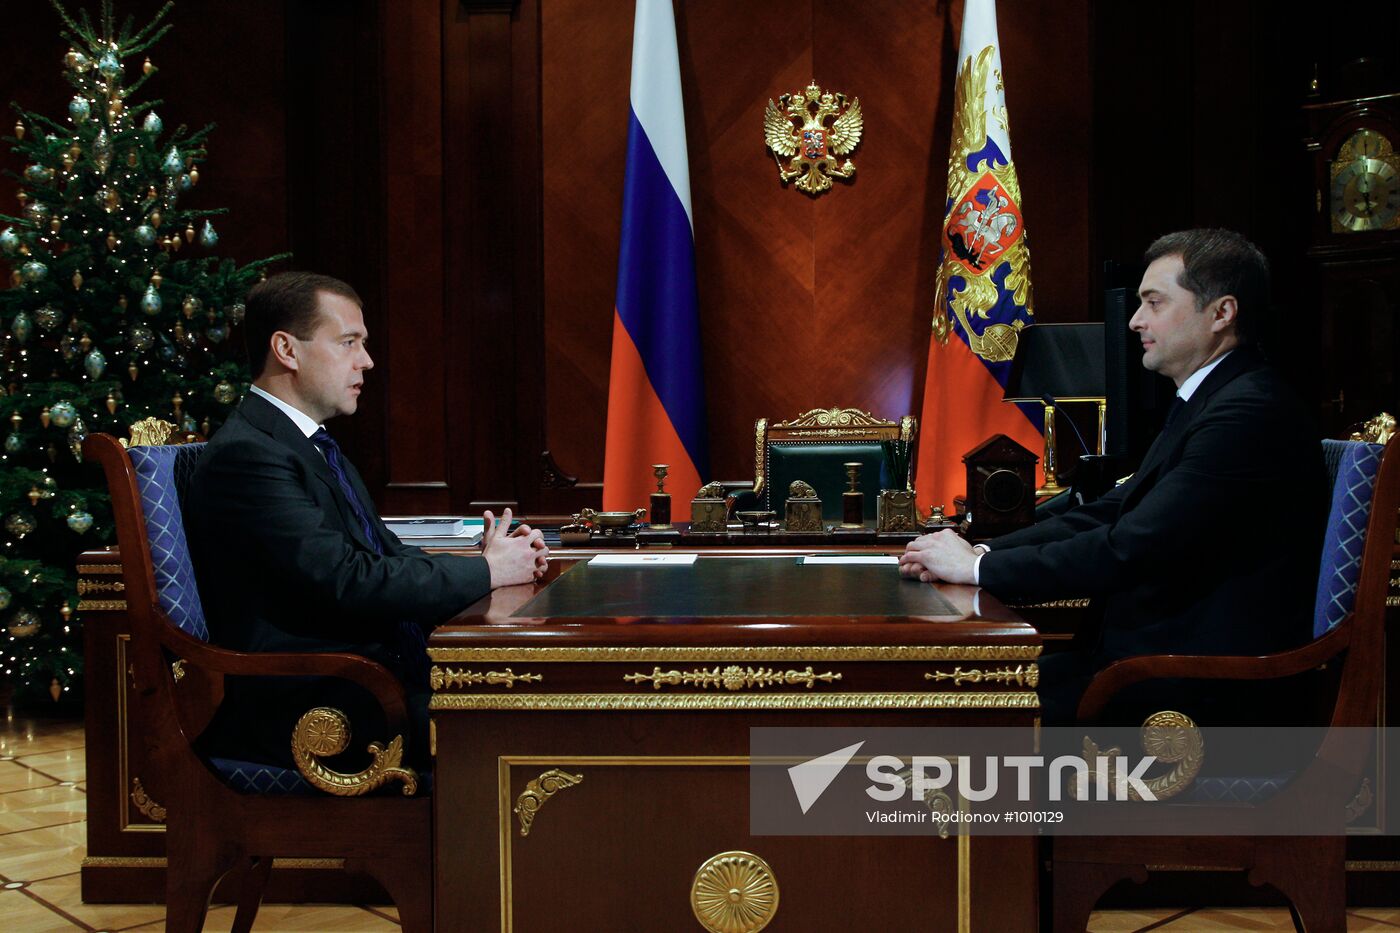 Dmitry Medvedev meets with Vladislav Surkov